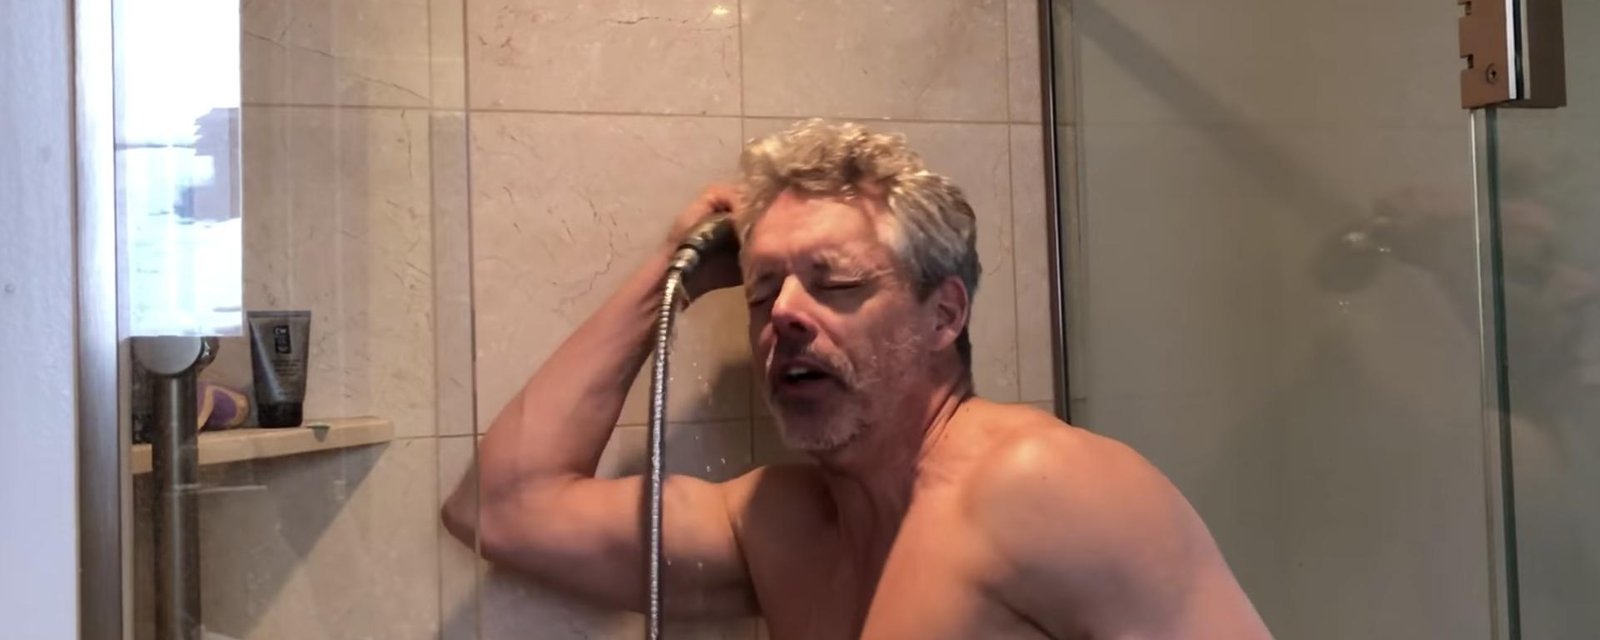 François Lambert publie une vidéo de lui sous la douche et on ne sait pas trop quoi en penser